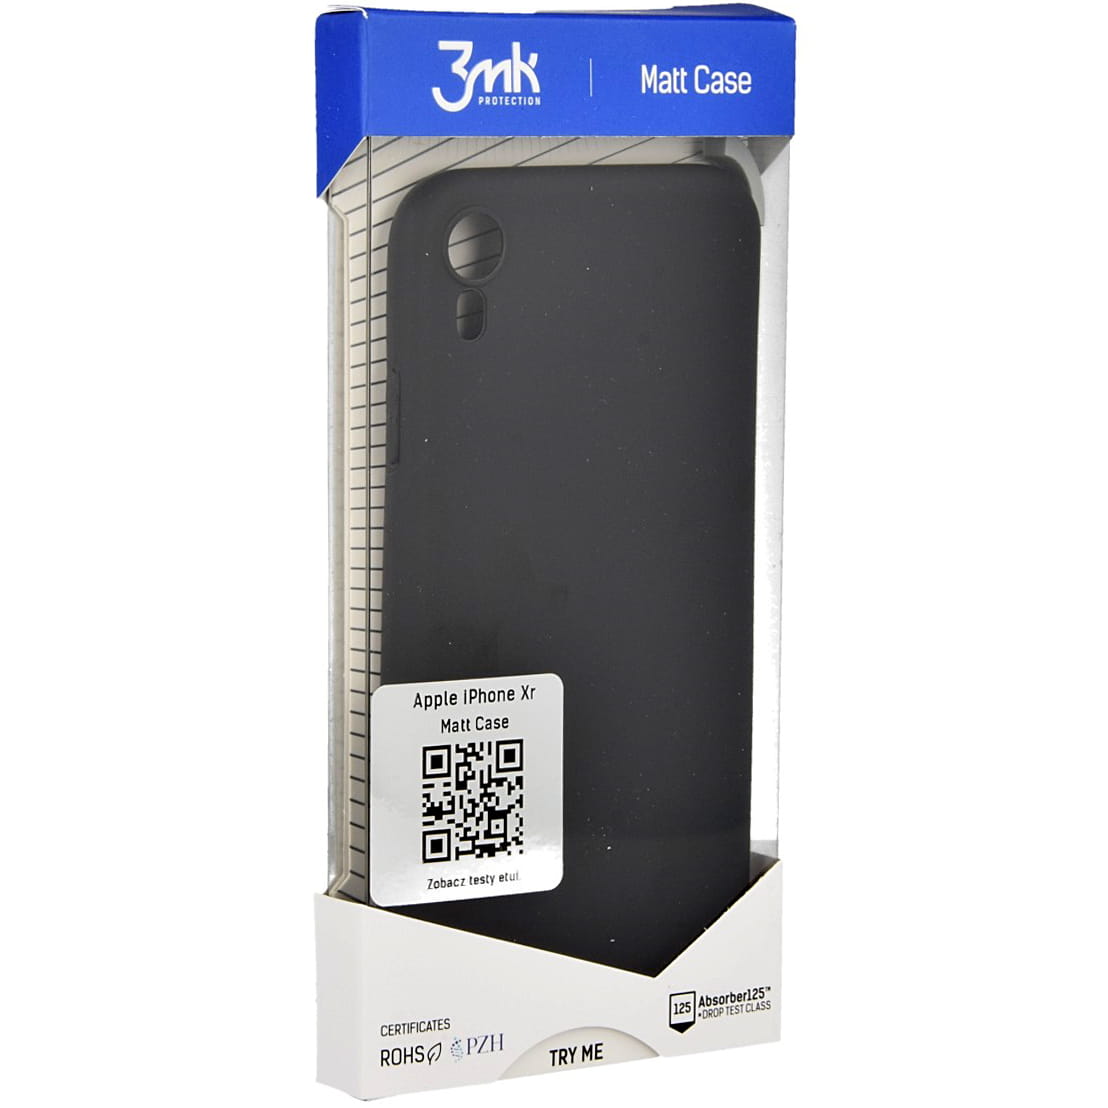 Schutzhülle 3mk aus der Serie Matt Case für iPhone Xr, schwarz